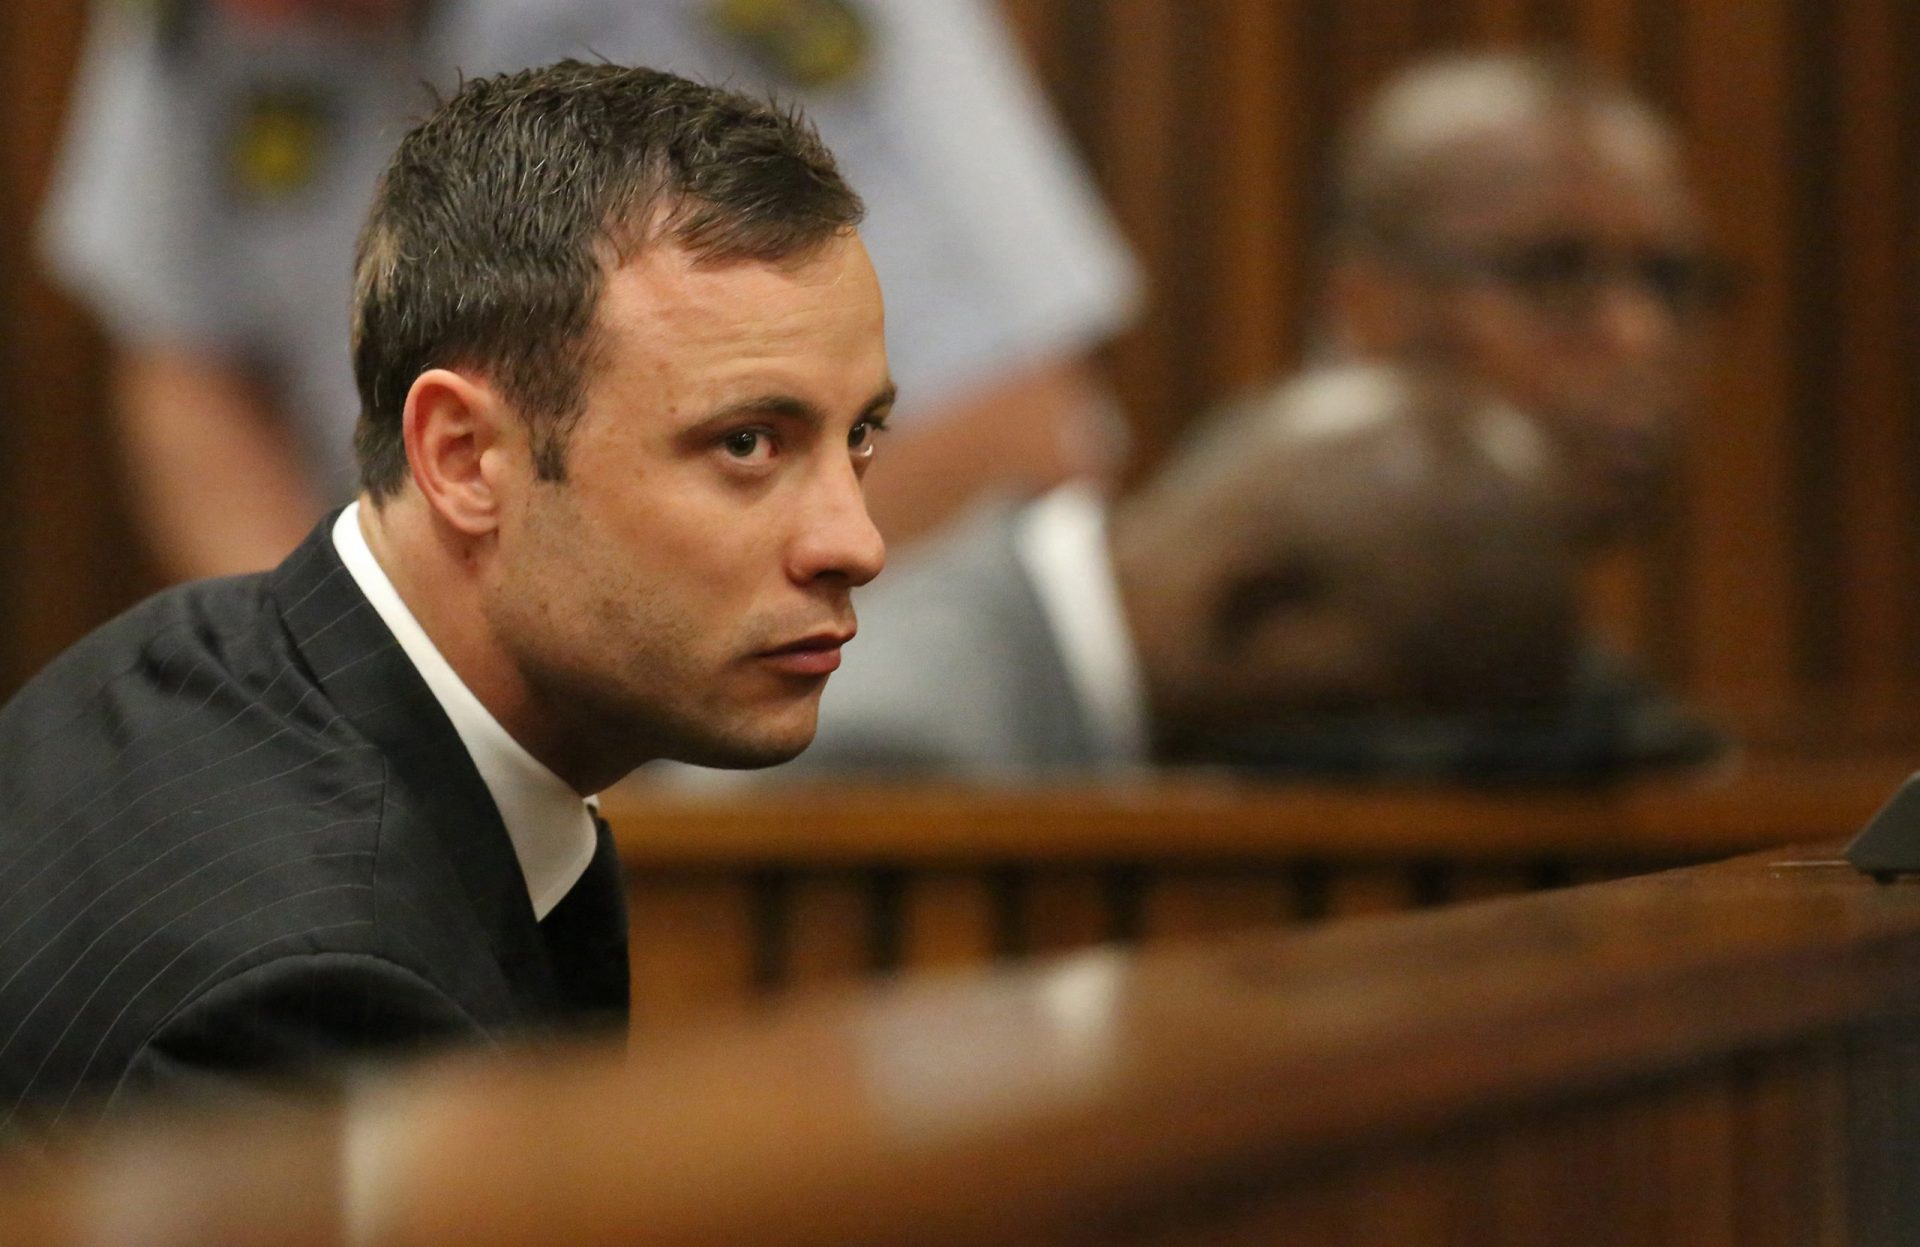 Oscar Pistorius sai da prisão 11 anos após ter sido condenado por matar a namorada